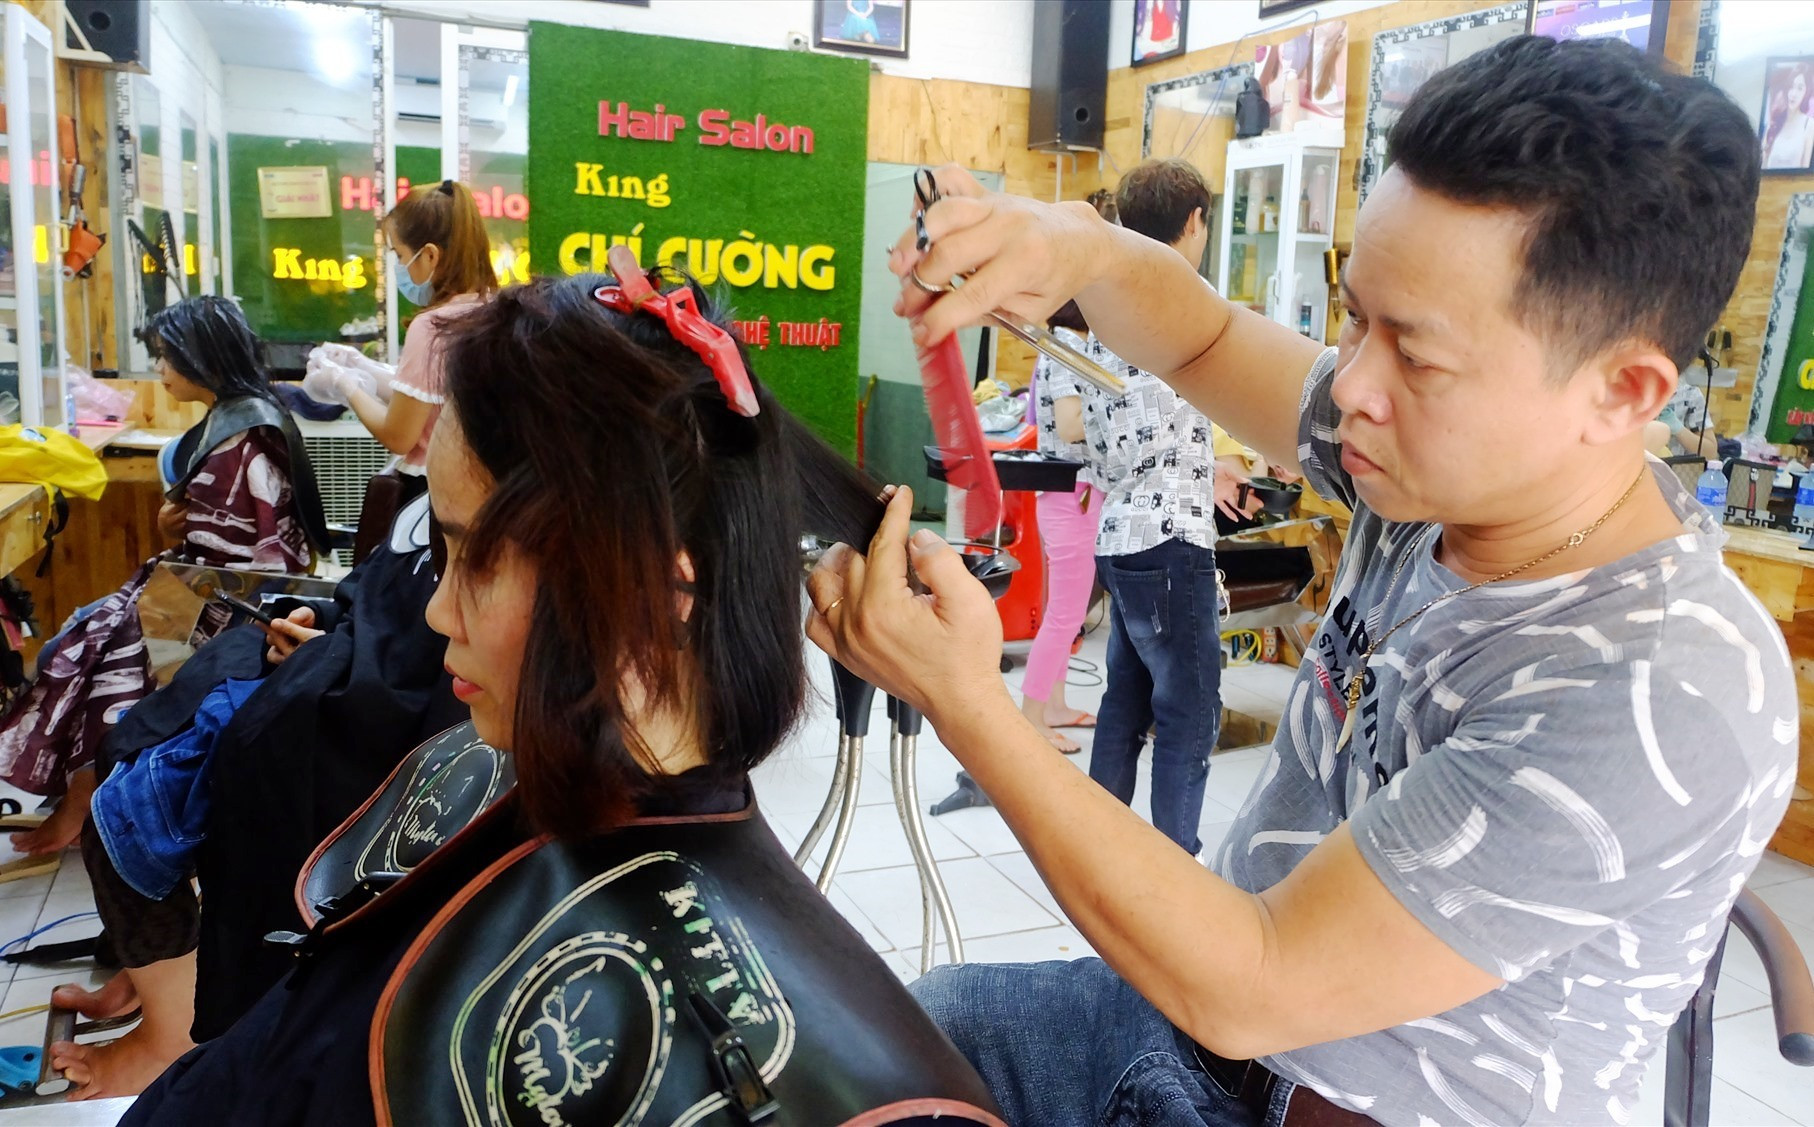 Anh Ung Nho Cường đang tạo mẫu tóc cho khách hàng. Ảnh: A.B